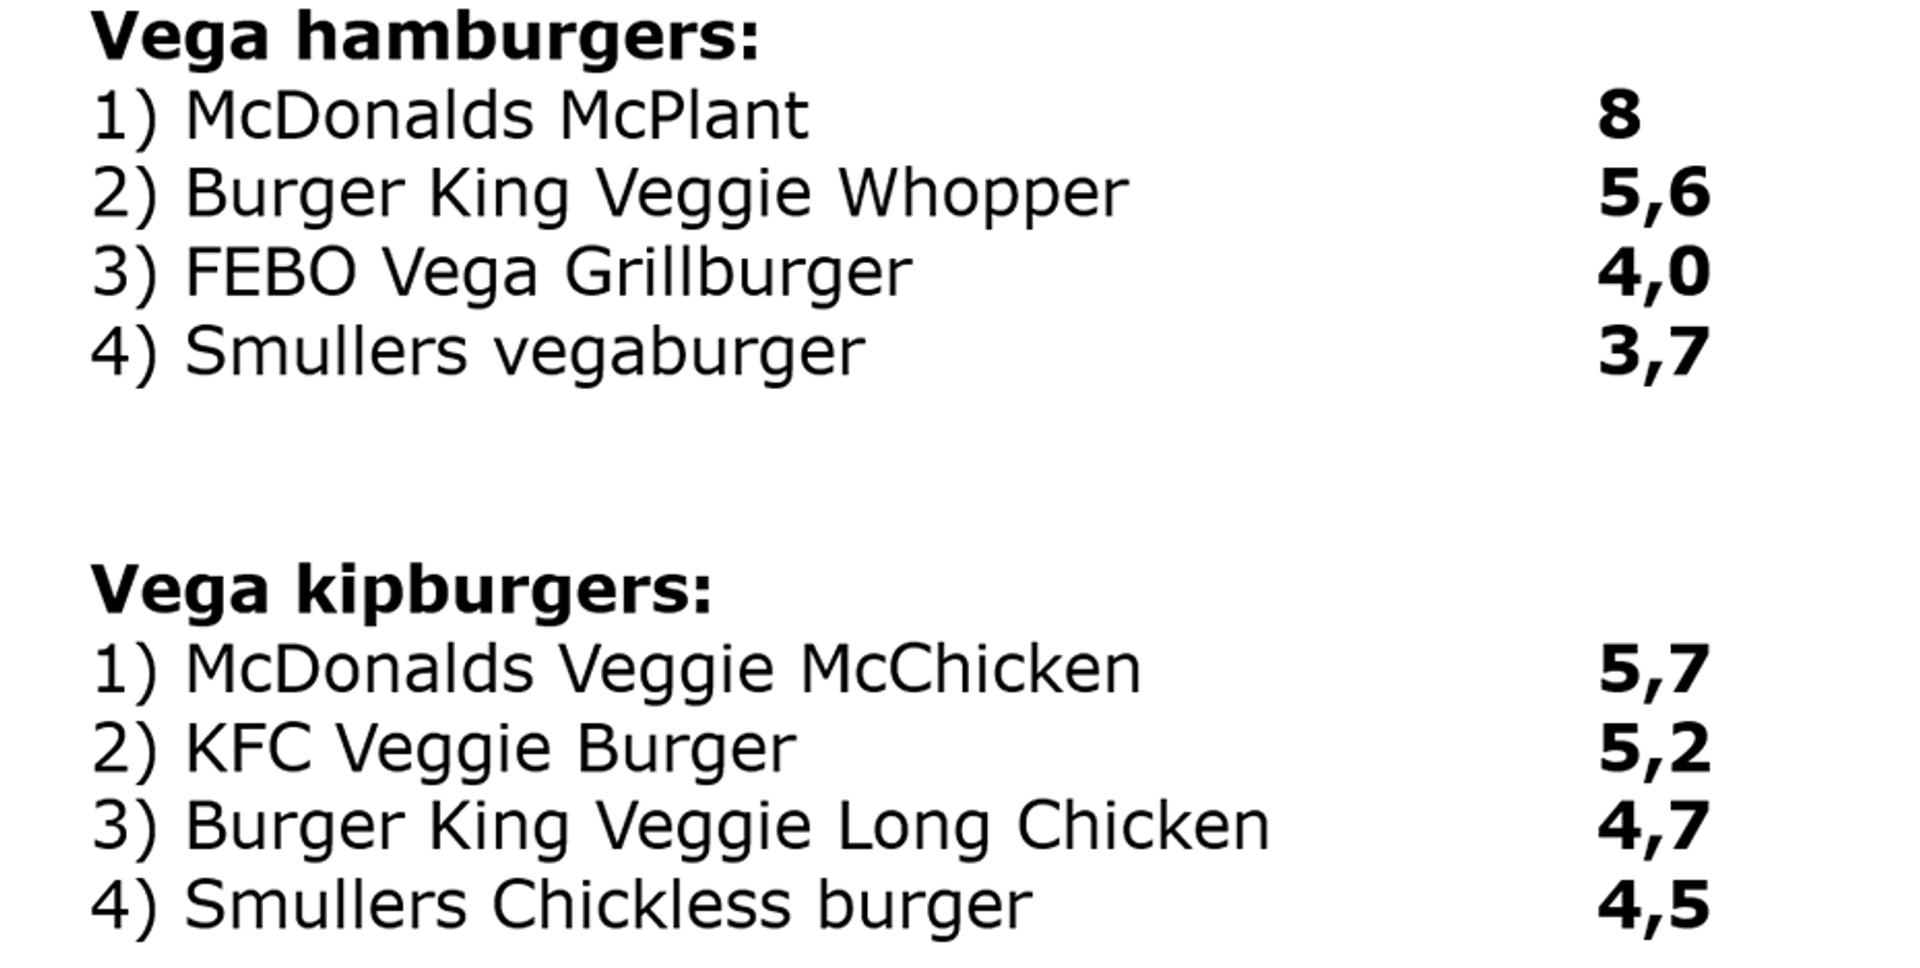 uitslag vegaburgers en kipburgers 930